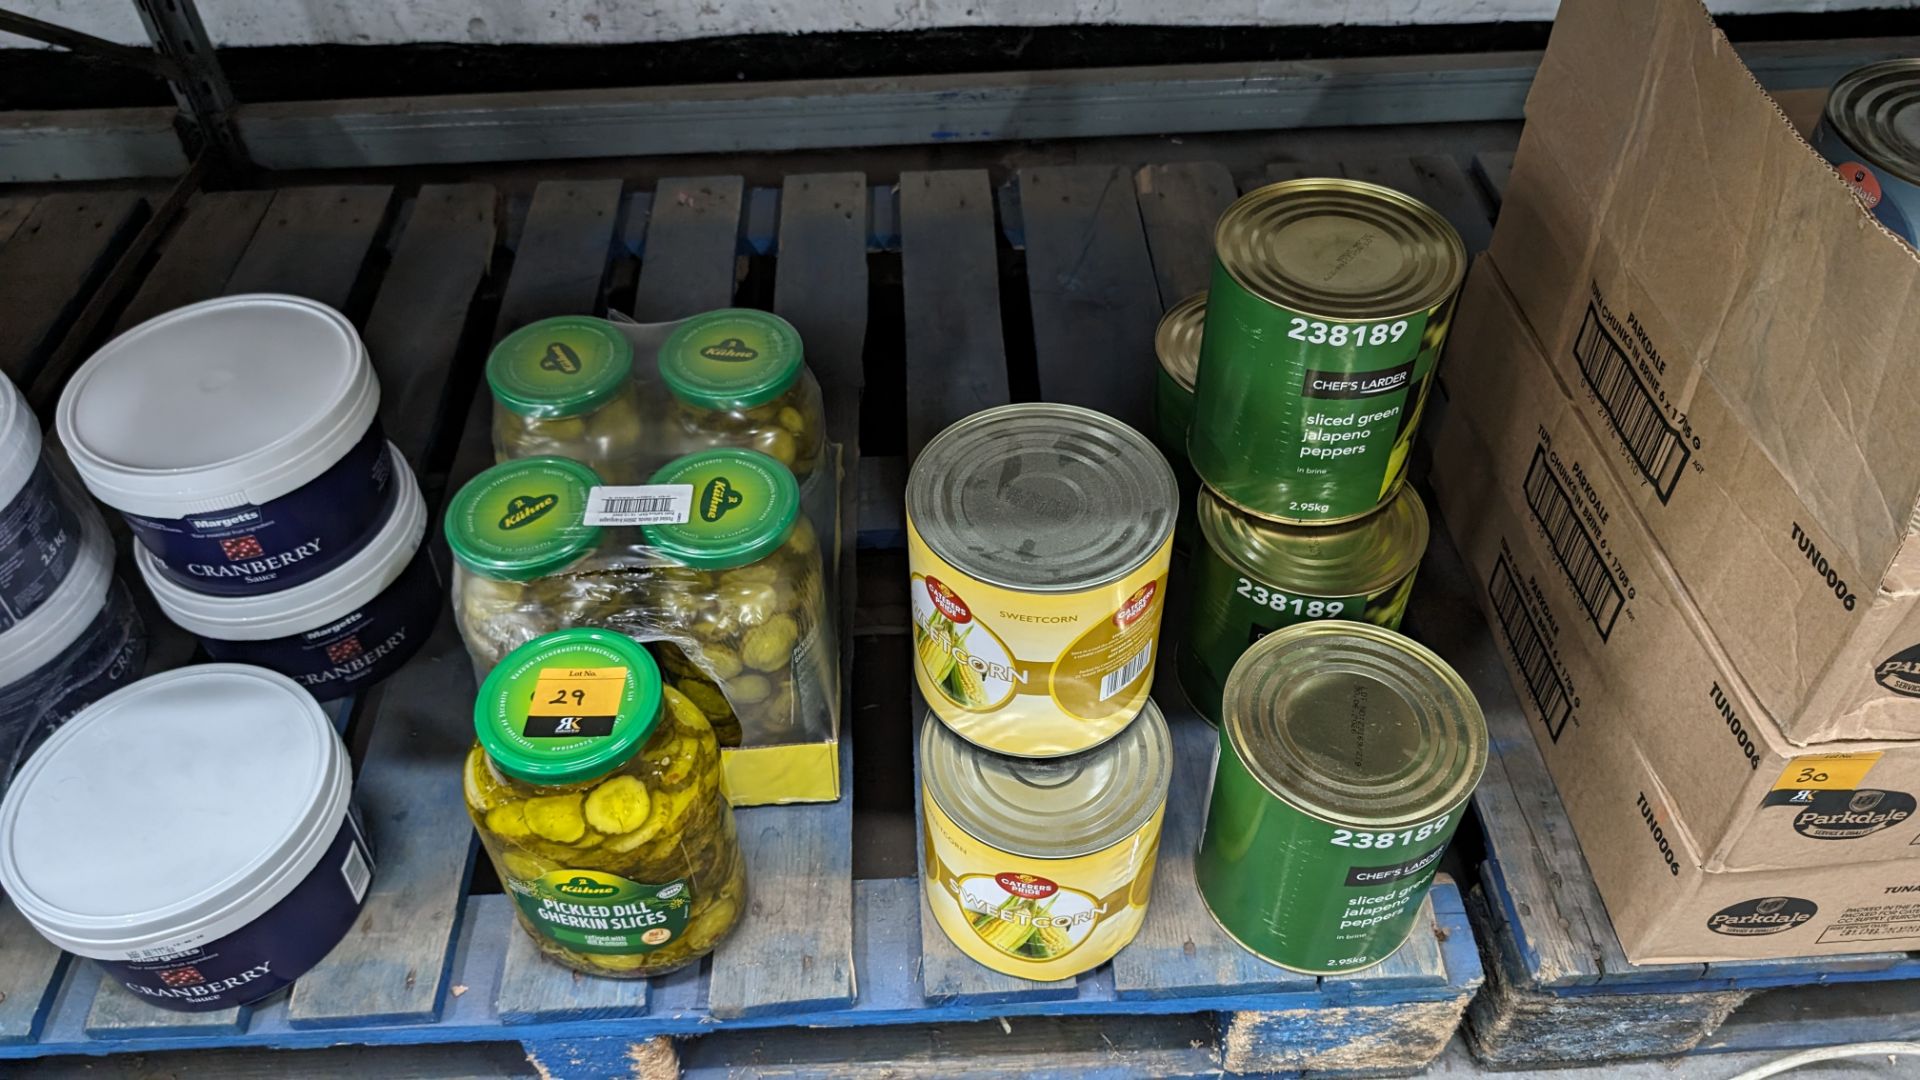 12 large jars & tins of sliced pickled gherkins, sweetcorn & jalapeño peppers. Jar size 2.45kg, swe